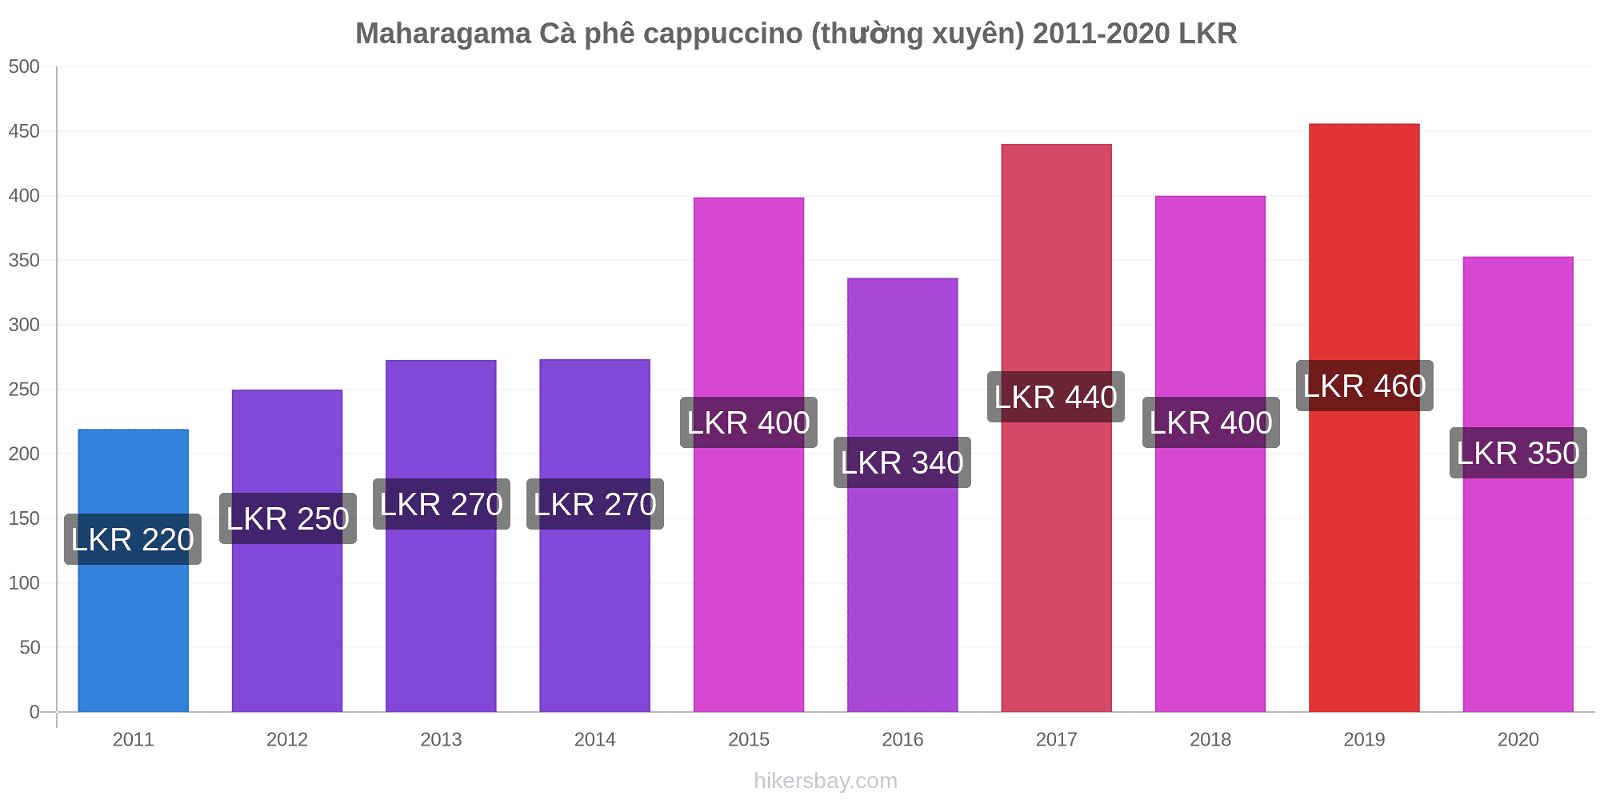 Maharagama thay đổi giá Cà phê cappuccino (thường xuyên) hikersbay.com